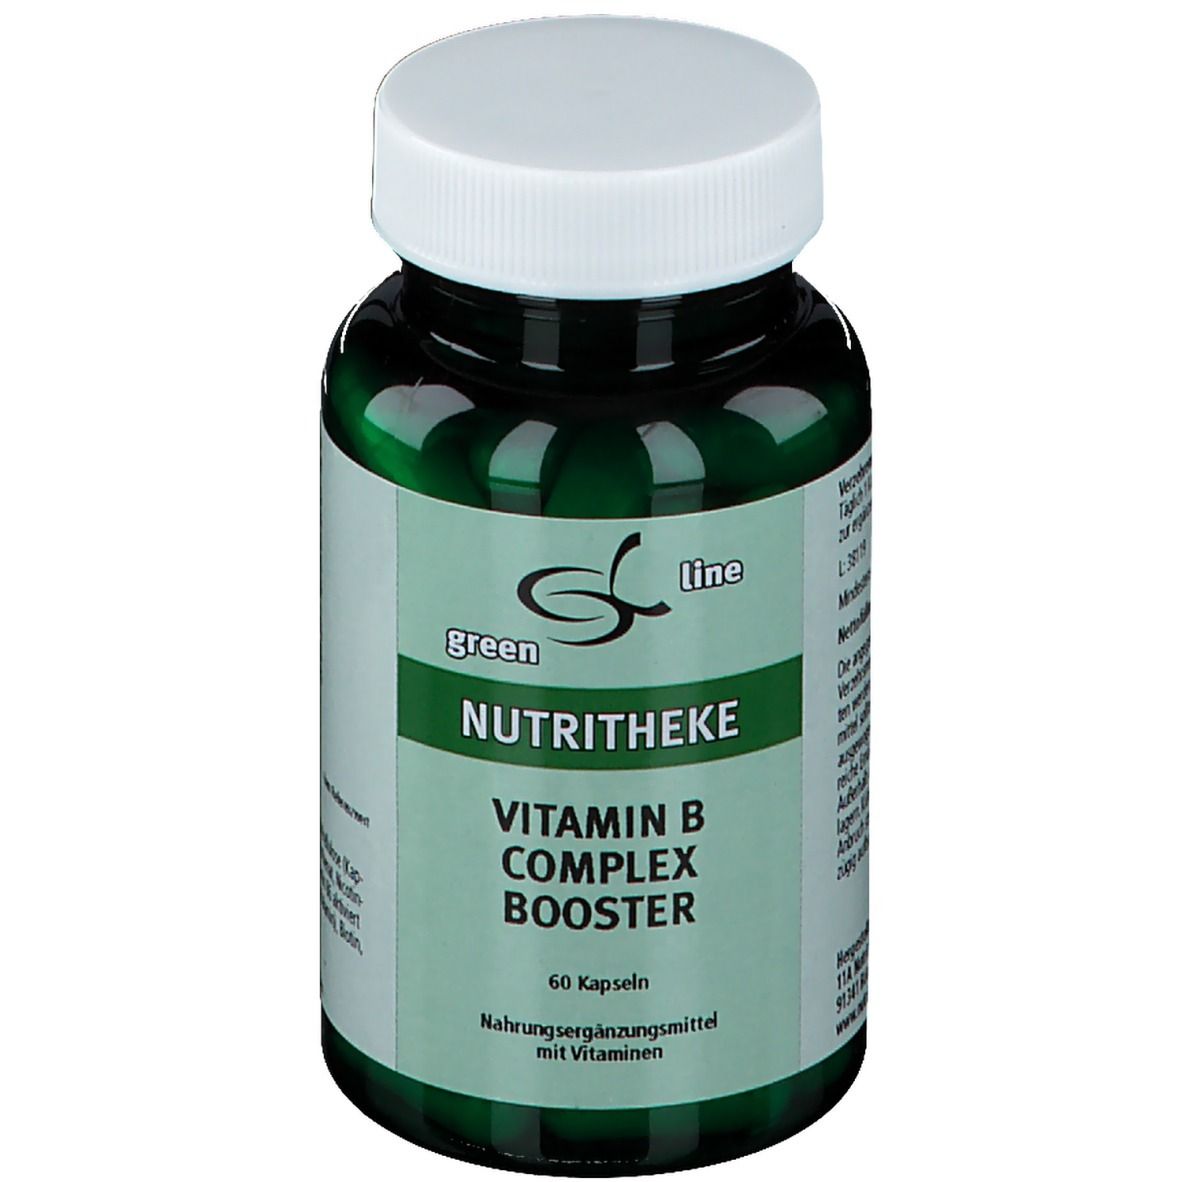 green line Vitamin Complex Booster